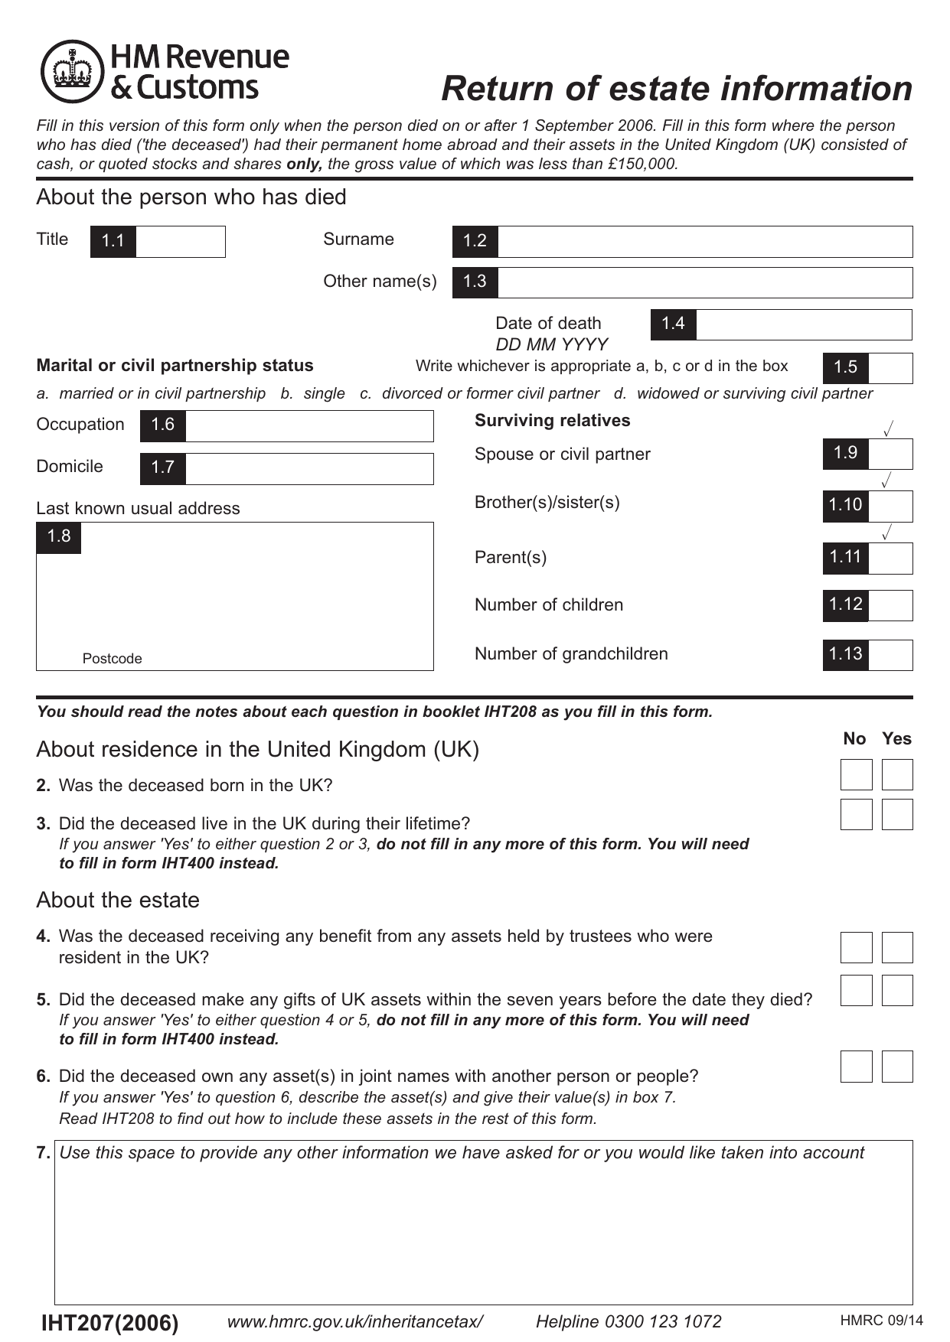 Form IHT207 Return of Estate Information - United Kingdom, Page 1